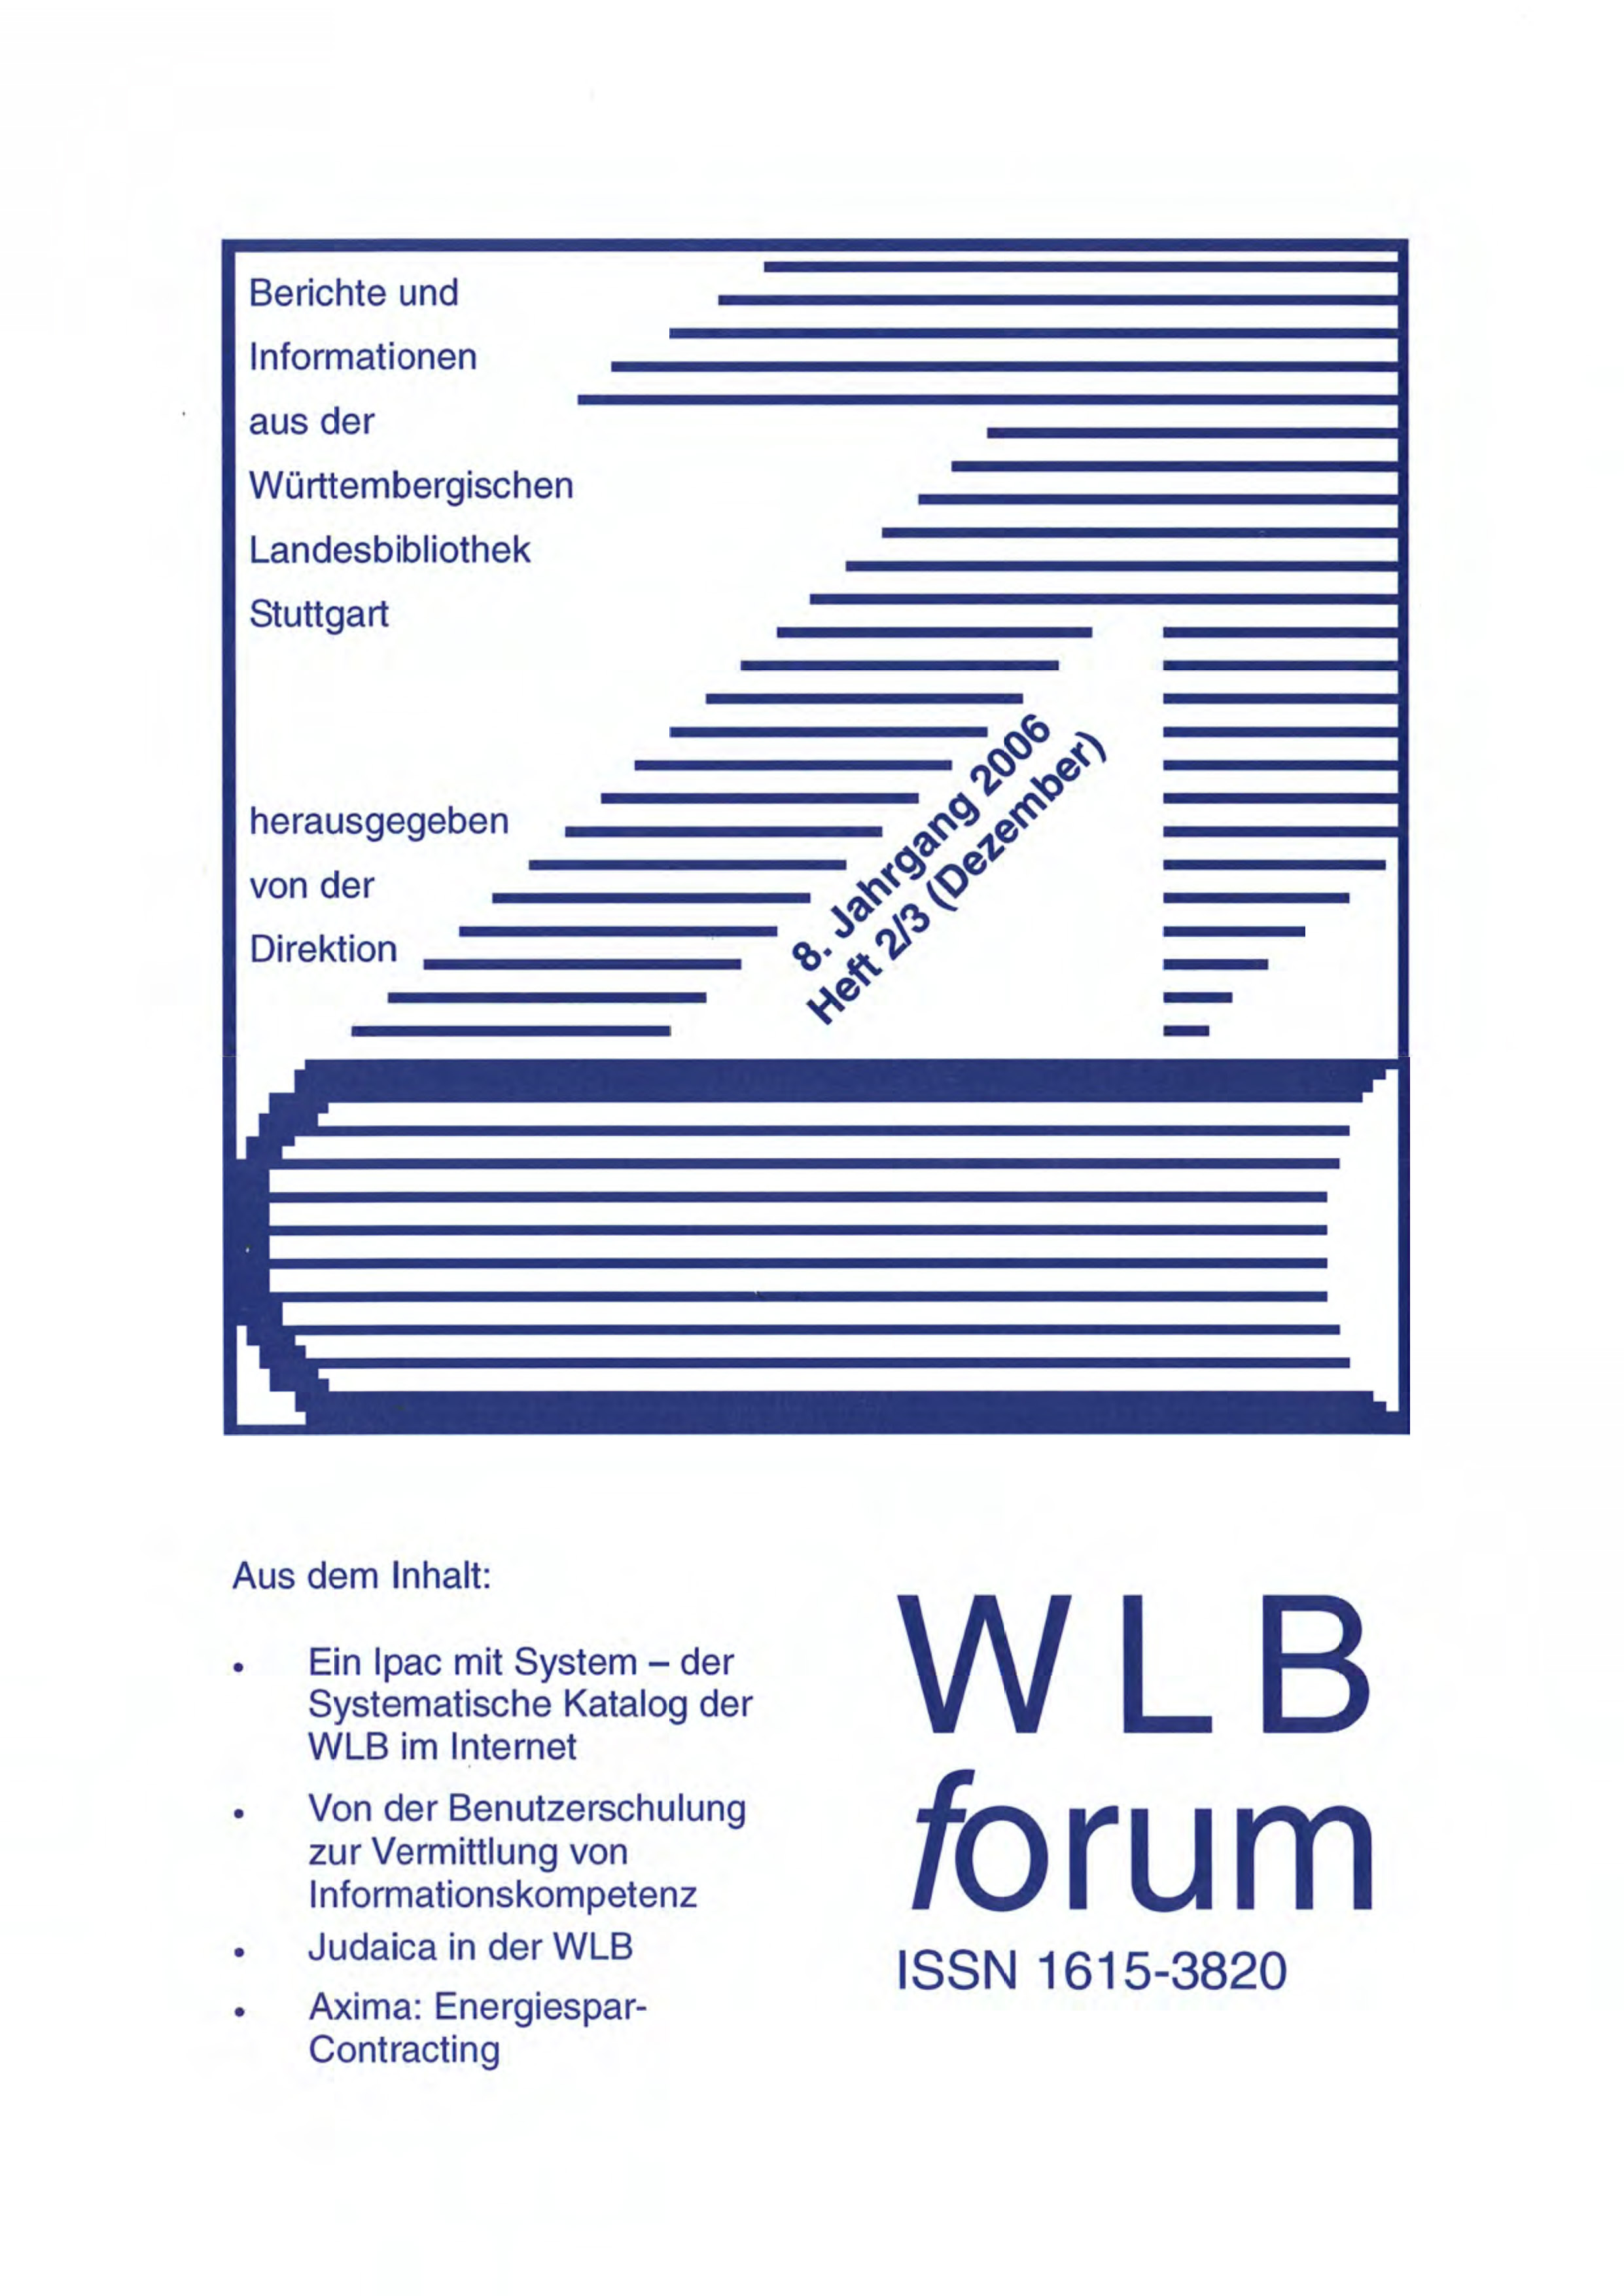                     Ansehen Bd. 8 Nr. 2/3 (2006): WLBforum
                